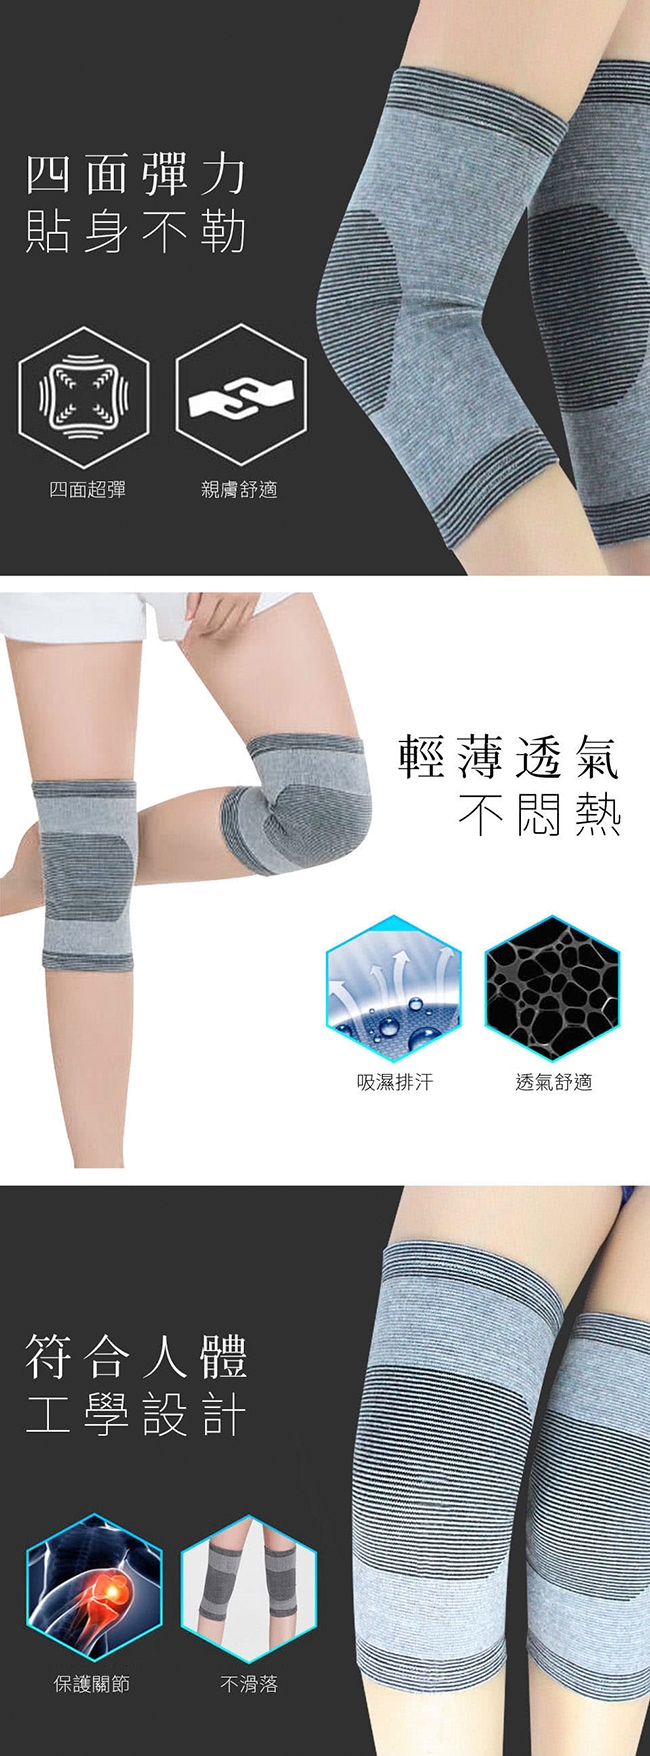 【Yi-sheng】*網路熱銷*竹炭可調式多功能調整型美背帶(S70美背帶+CC膝腕)